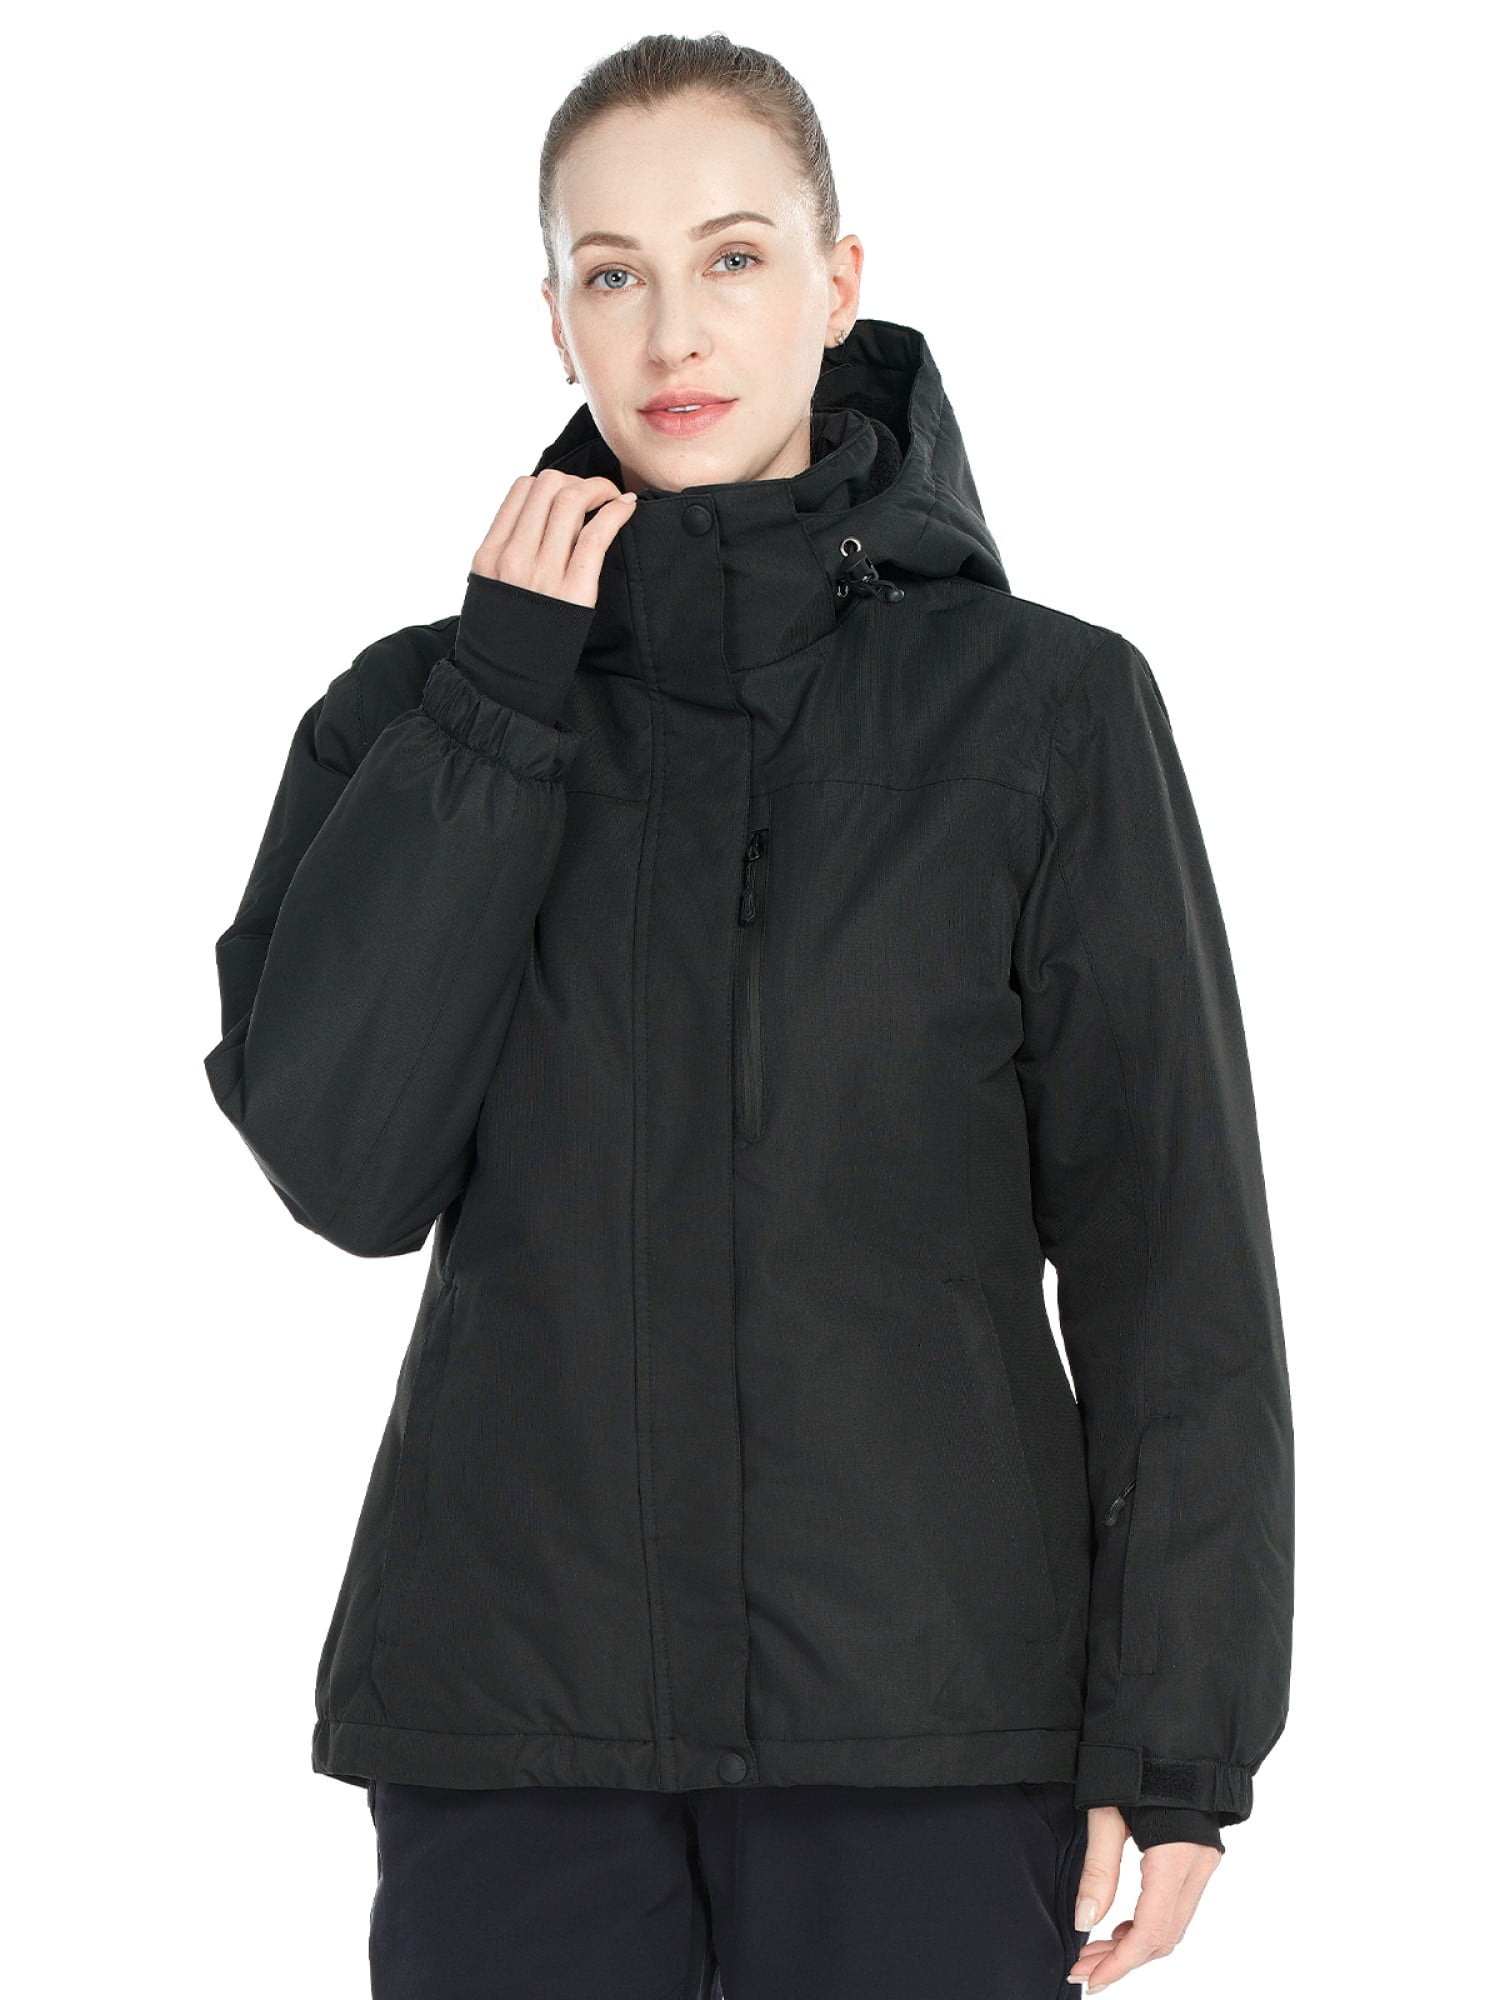 FREE SOLDIER Boys Girls Waterproof Ski Jacket Fleece Lined Warm Winter Snow Coat Kids Winter Jacket with Detachable Hood 